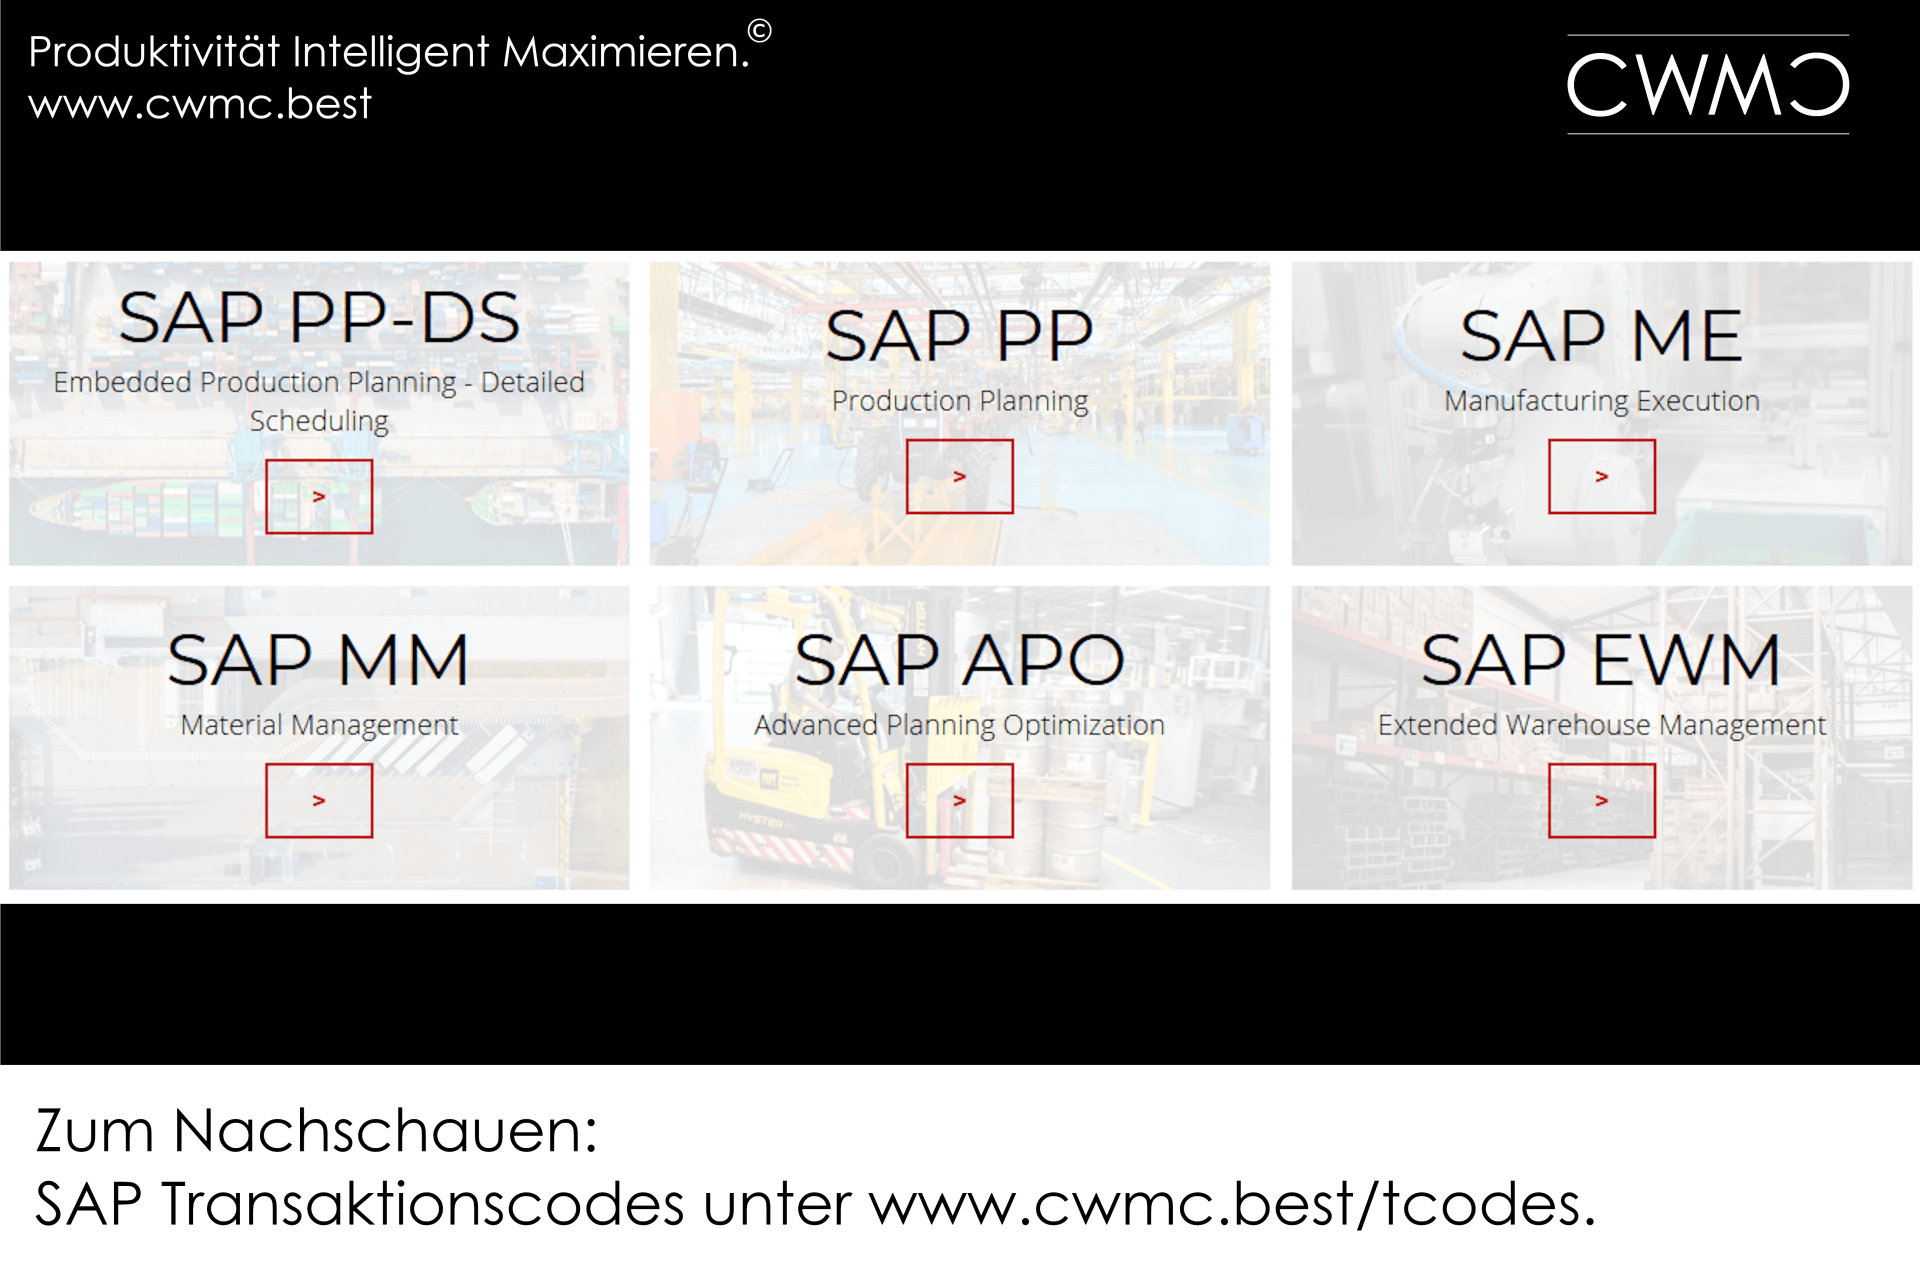 SAP PP, SAP PP-DS, SAP ME, SAP MM, SAP APO, SAP EWM, Transaktionscodes